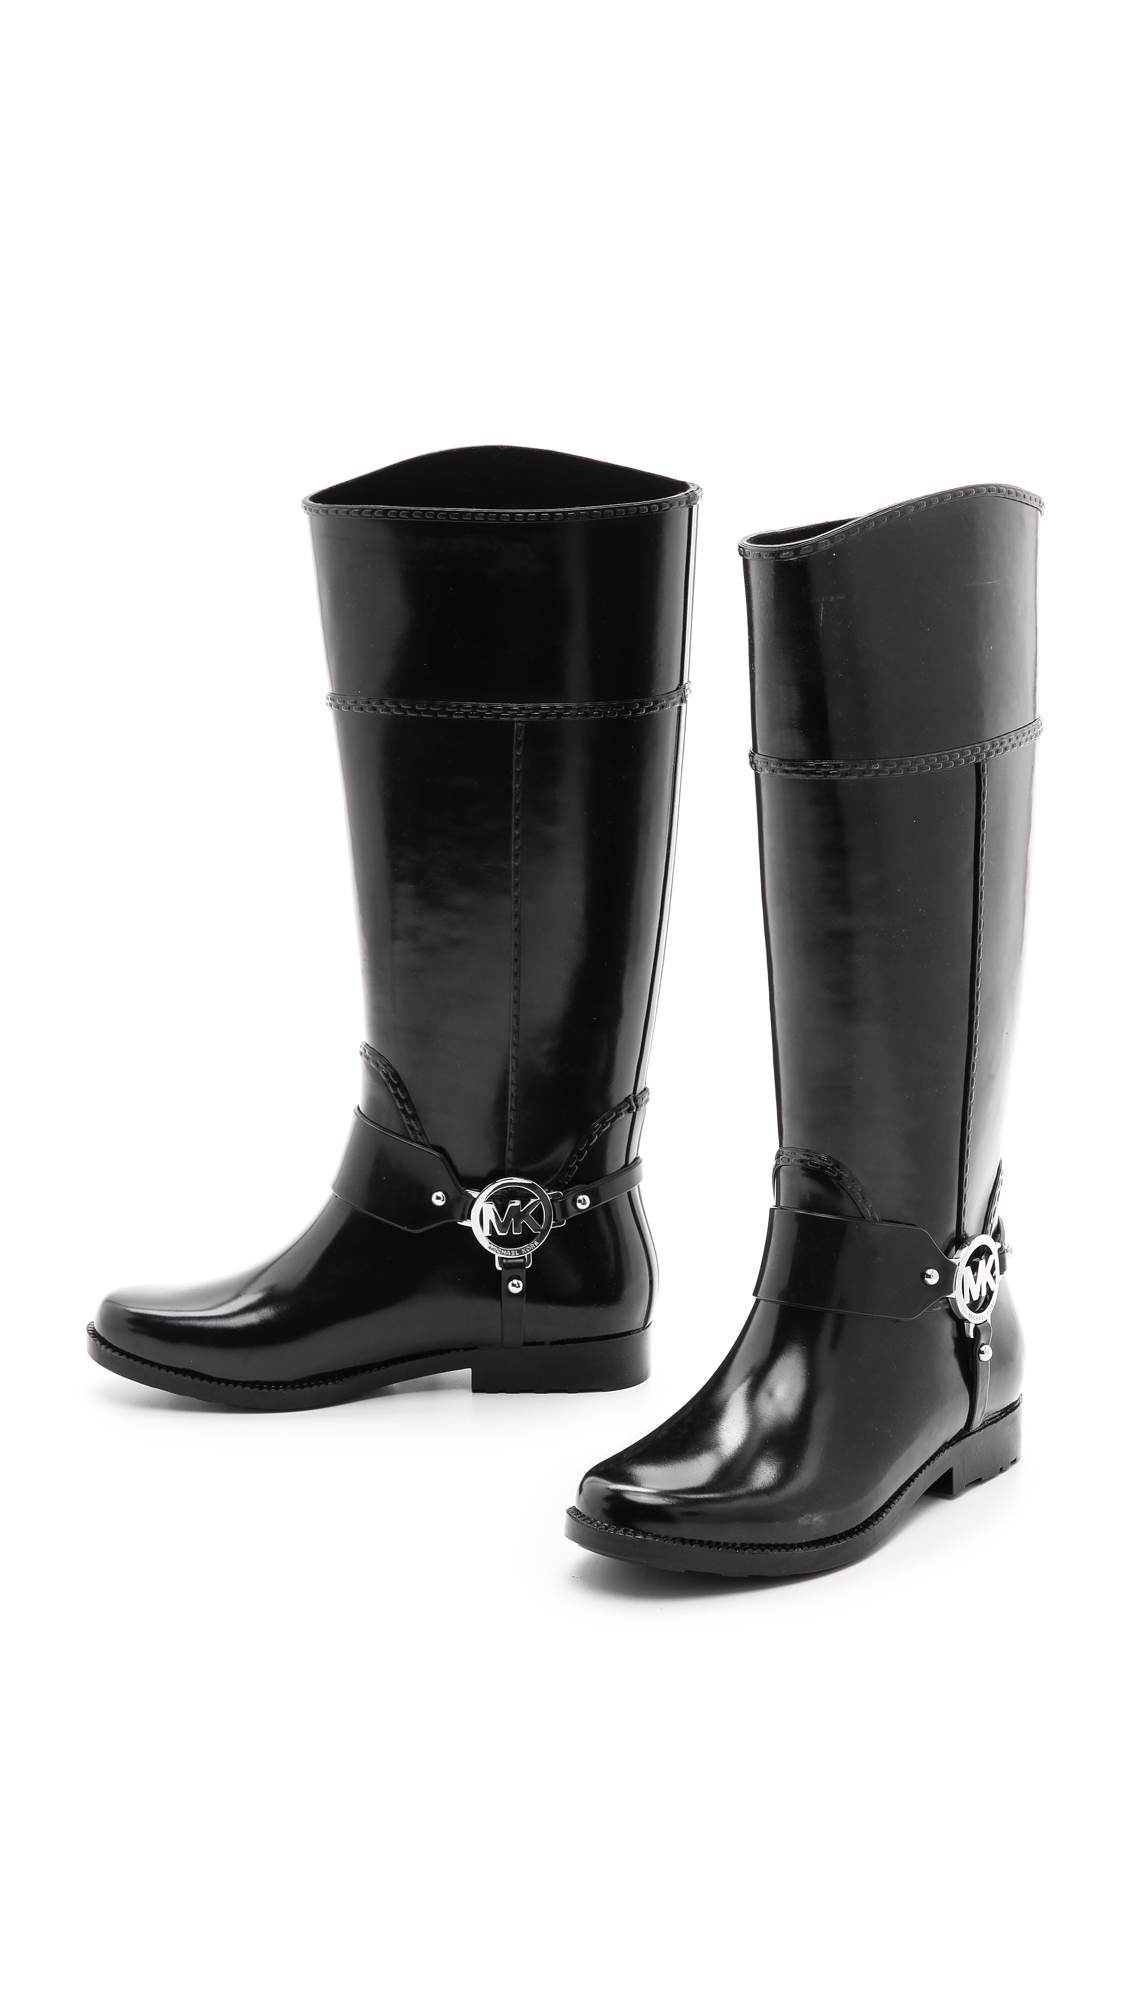 Lyst - Michael Michael Kors Fulton Harness Tall Rain Boots Black in Black